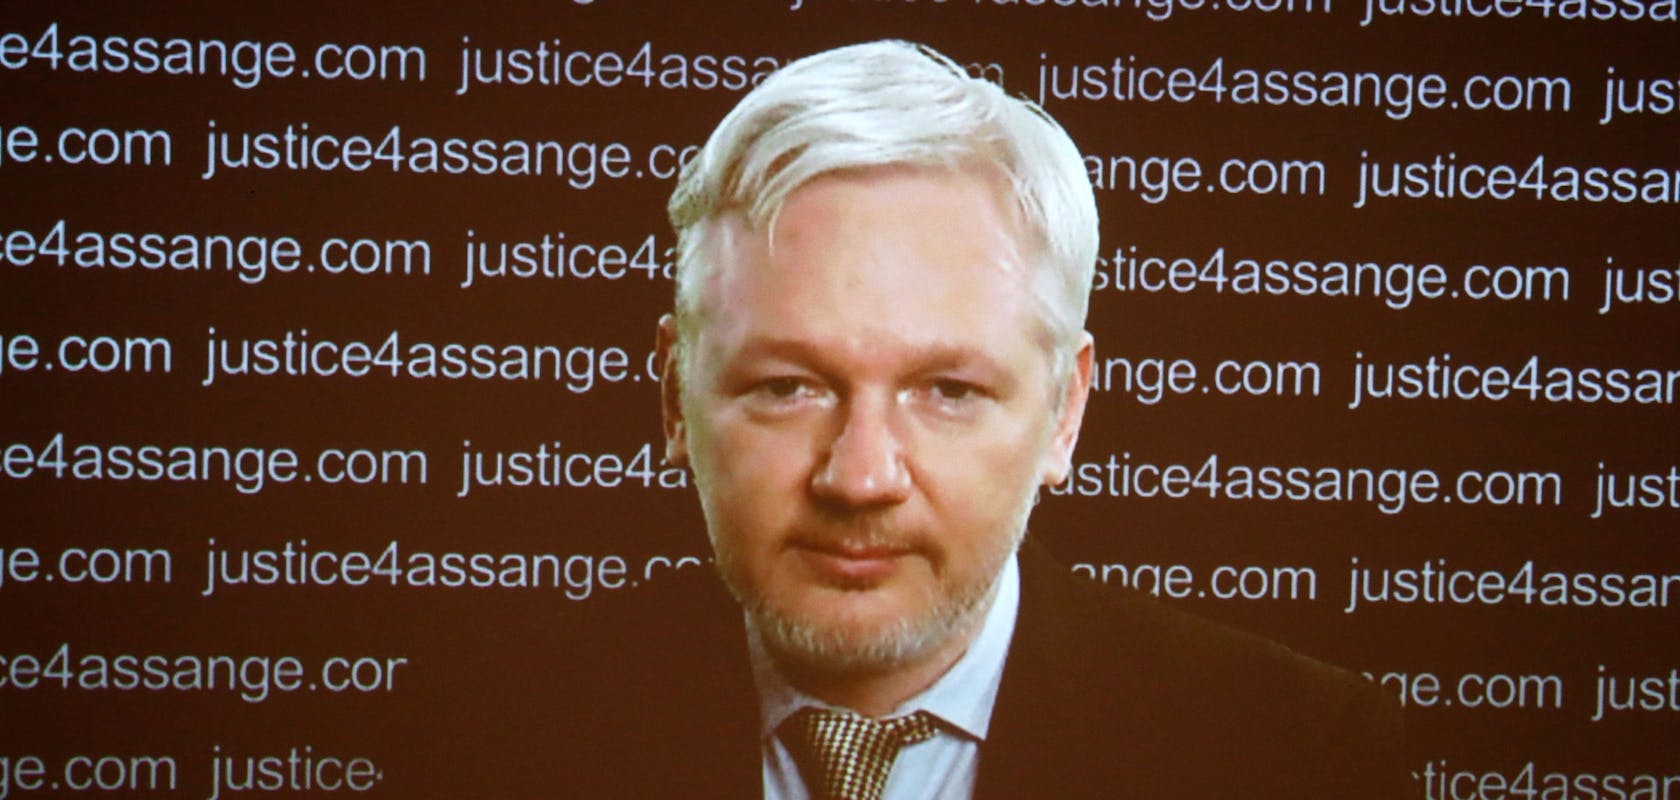 d3ddeefe-a321-4e64-843c-8bb8d2cfee64_Julian-Assange.jpg?auto=compress,format&rect=0,173,1920,914&w=1680&h=800